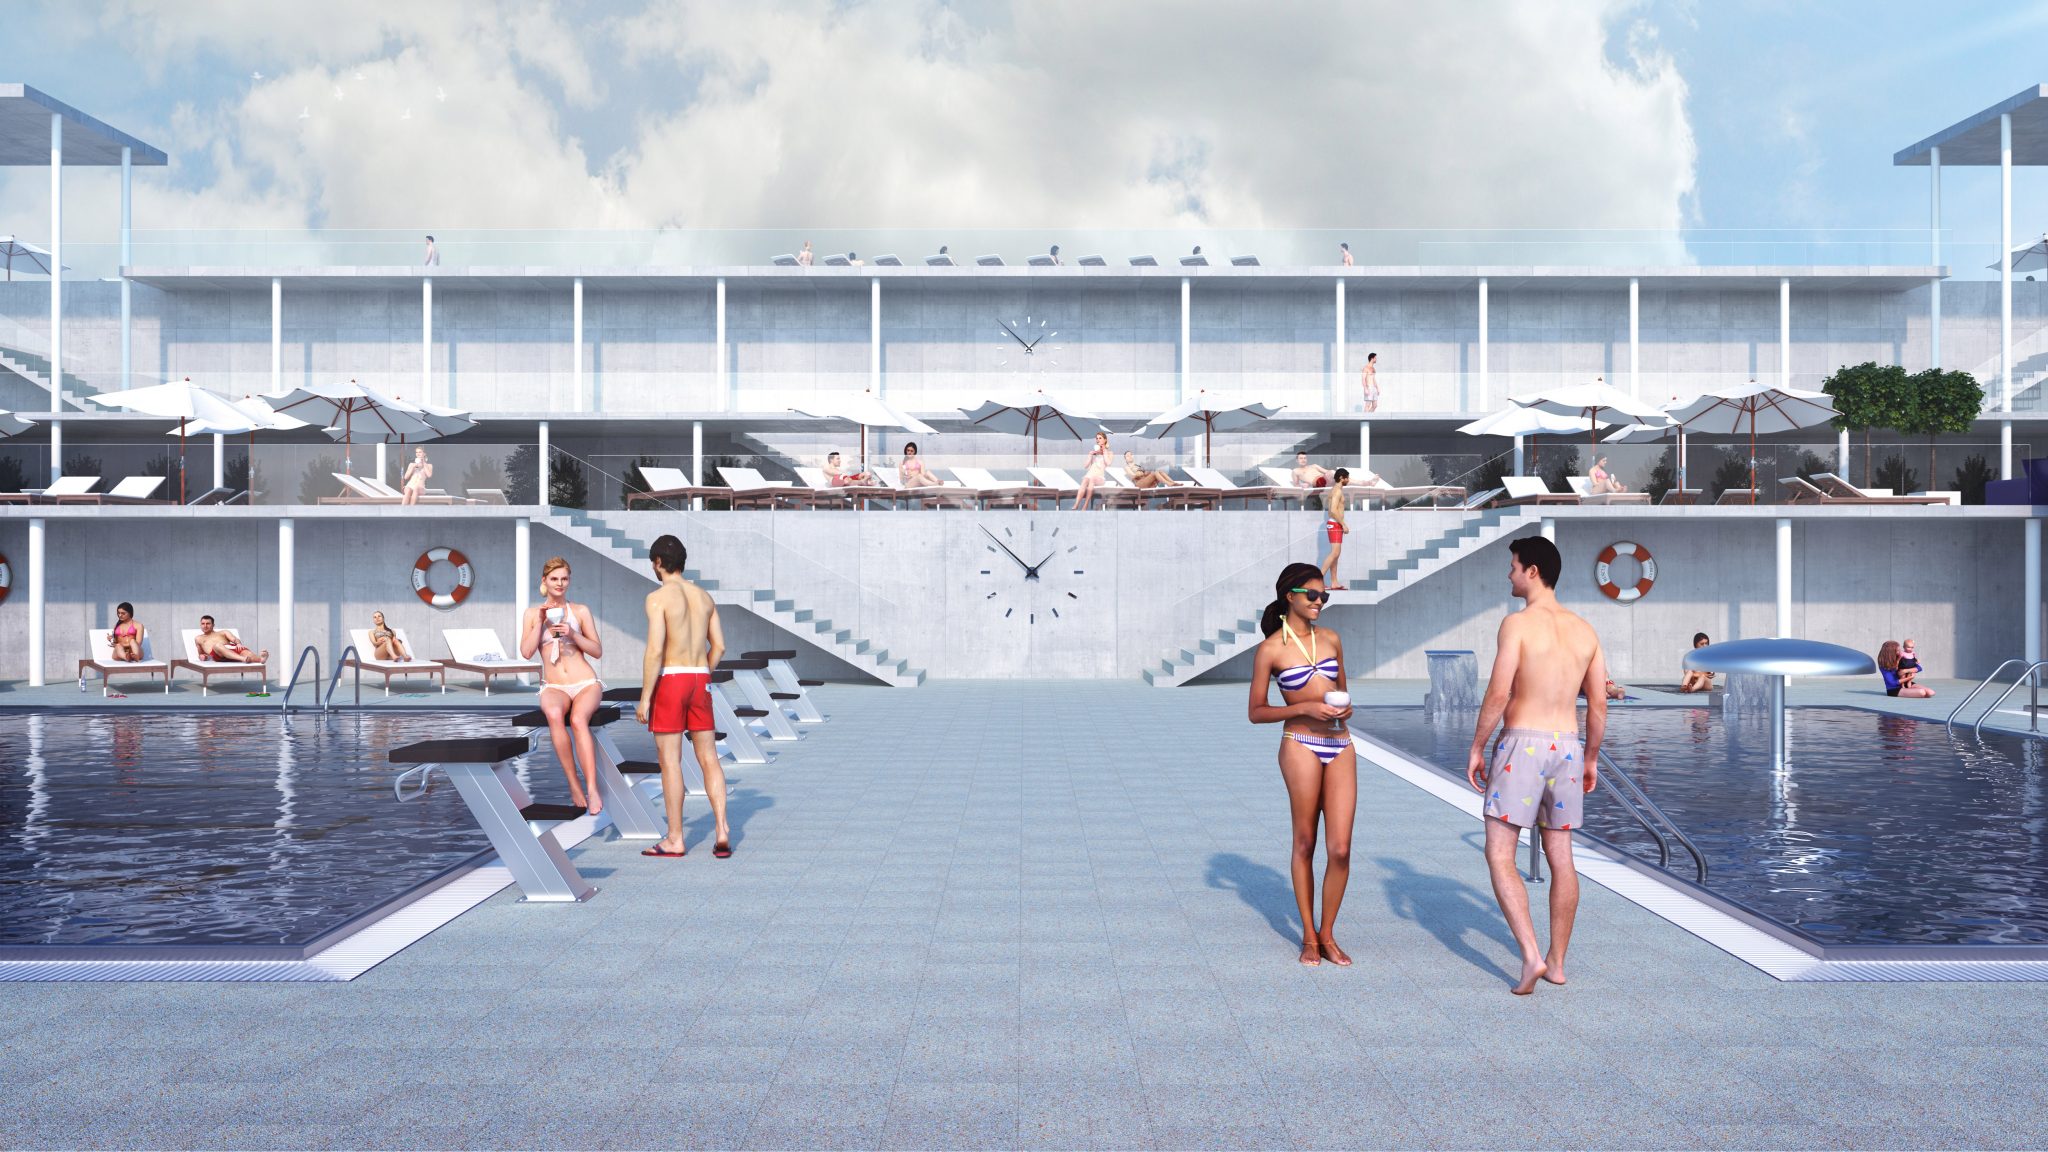 Architektonische visualisierungen - Impressarch Aquapark Martin